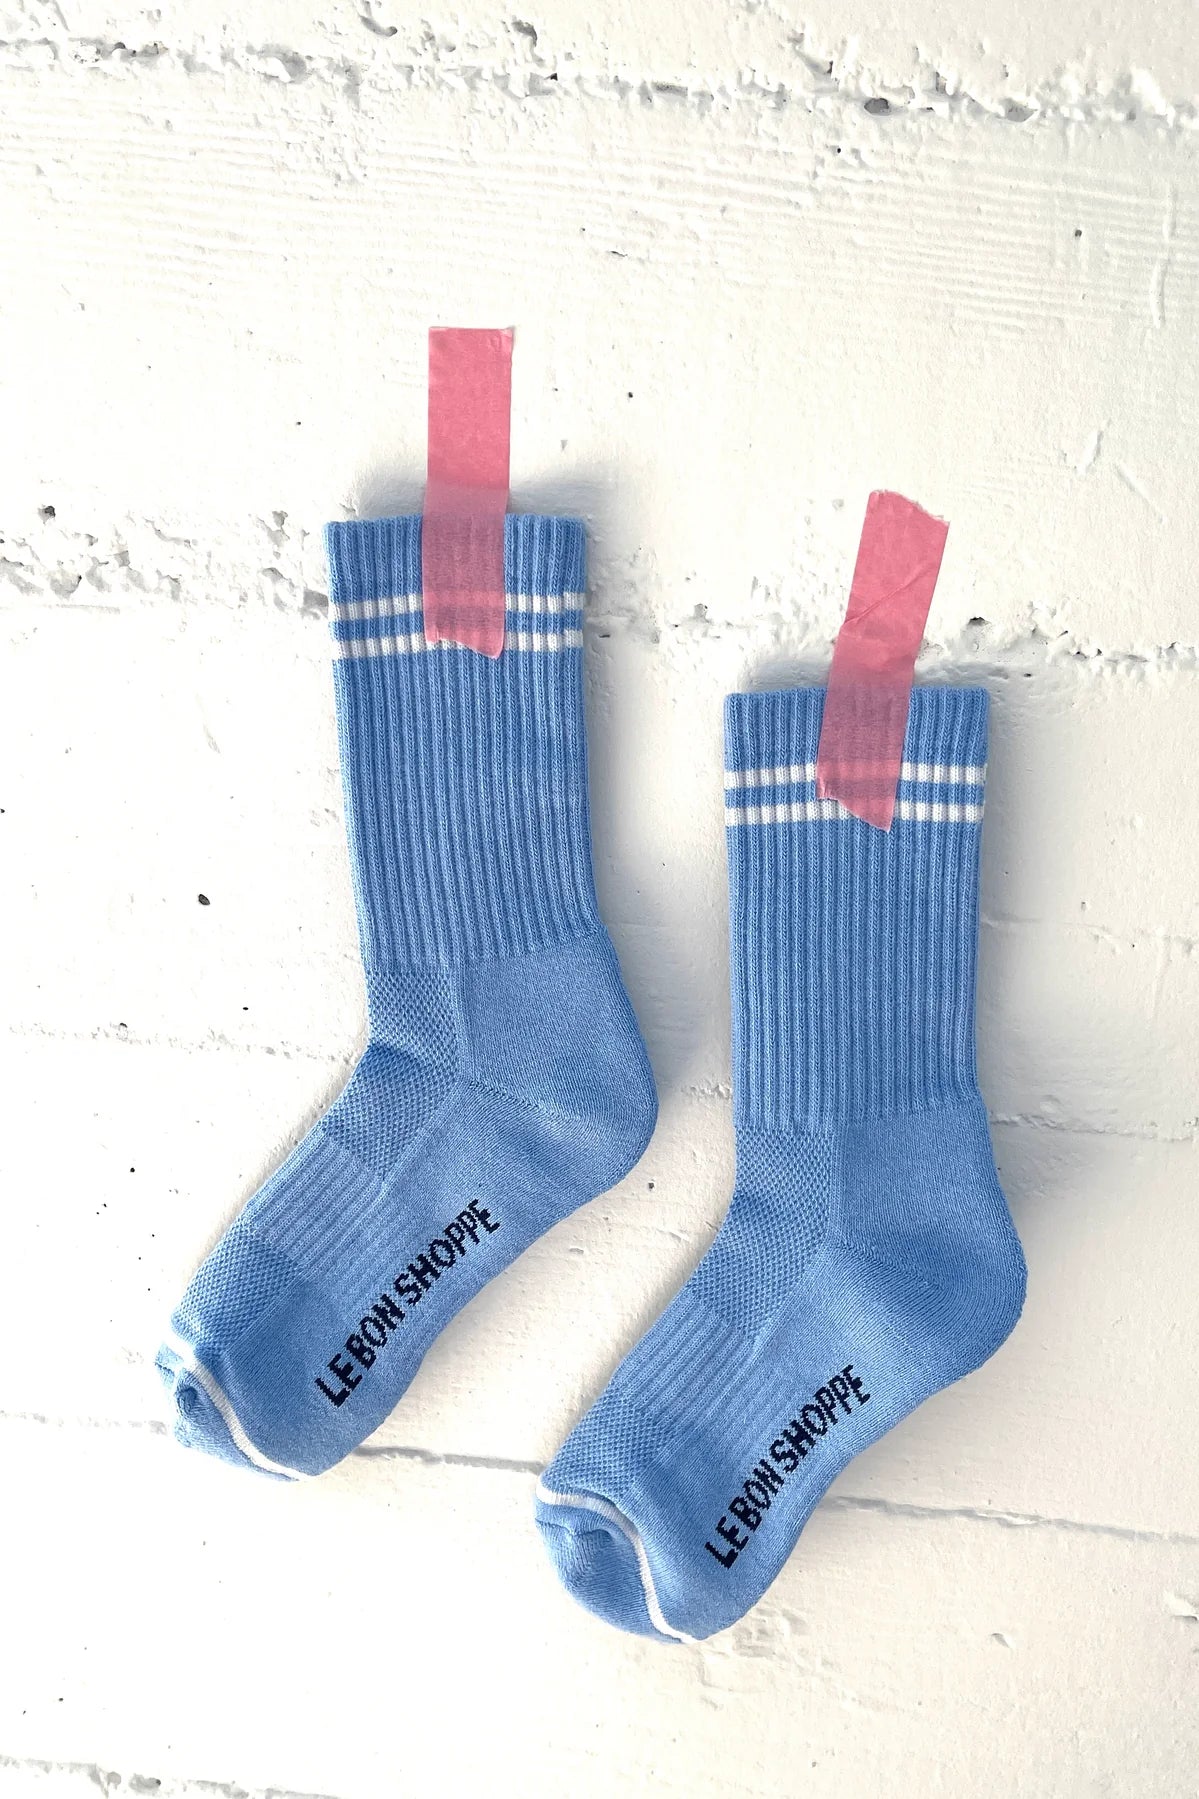 Le Bon Boyfriend socks in French Blue